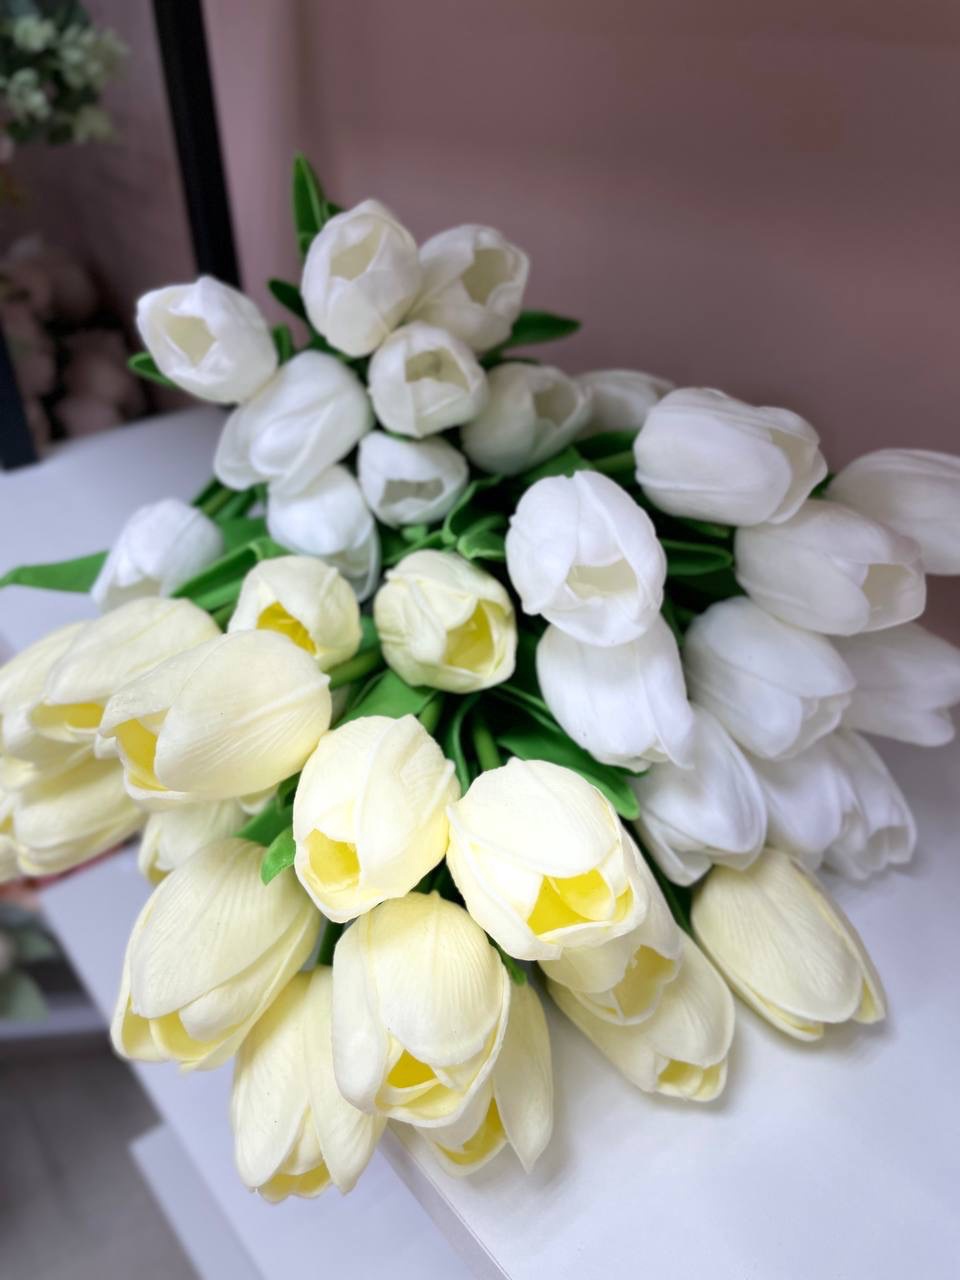 Тюльпаны - 50 ₽, заказать онлайн.